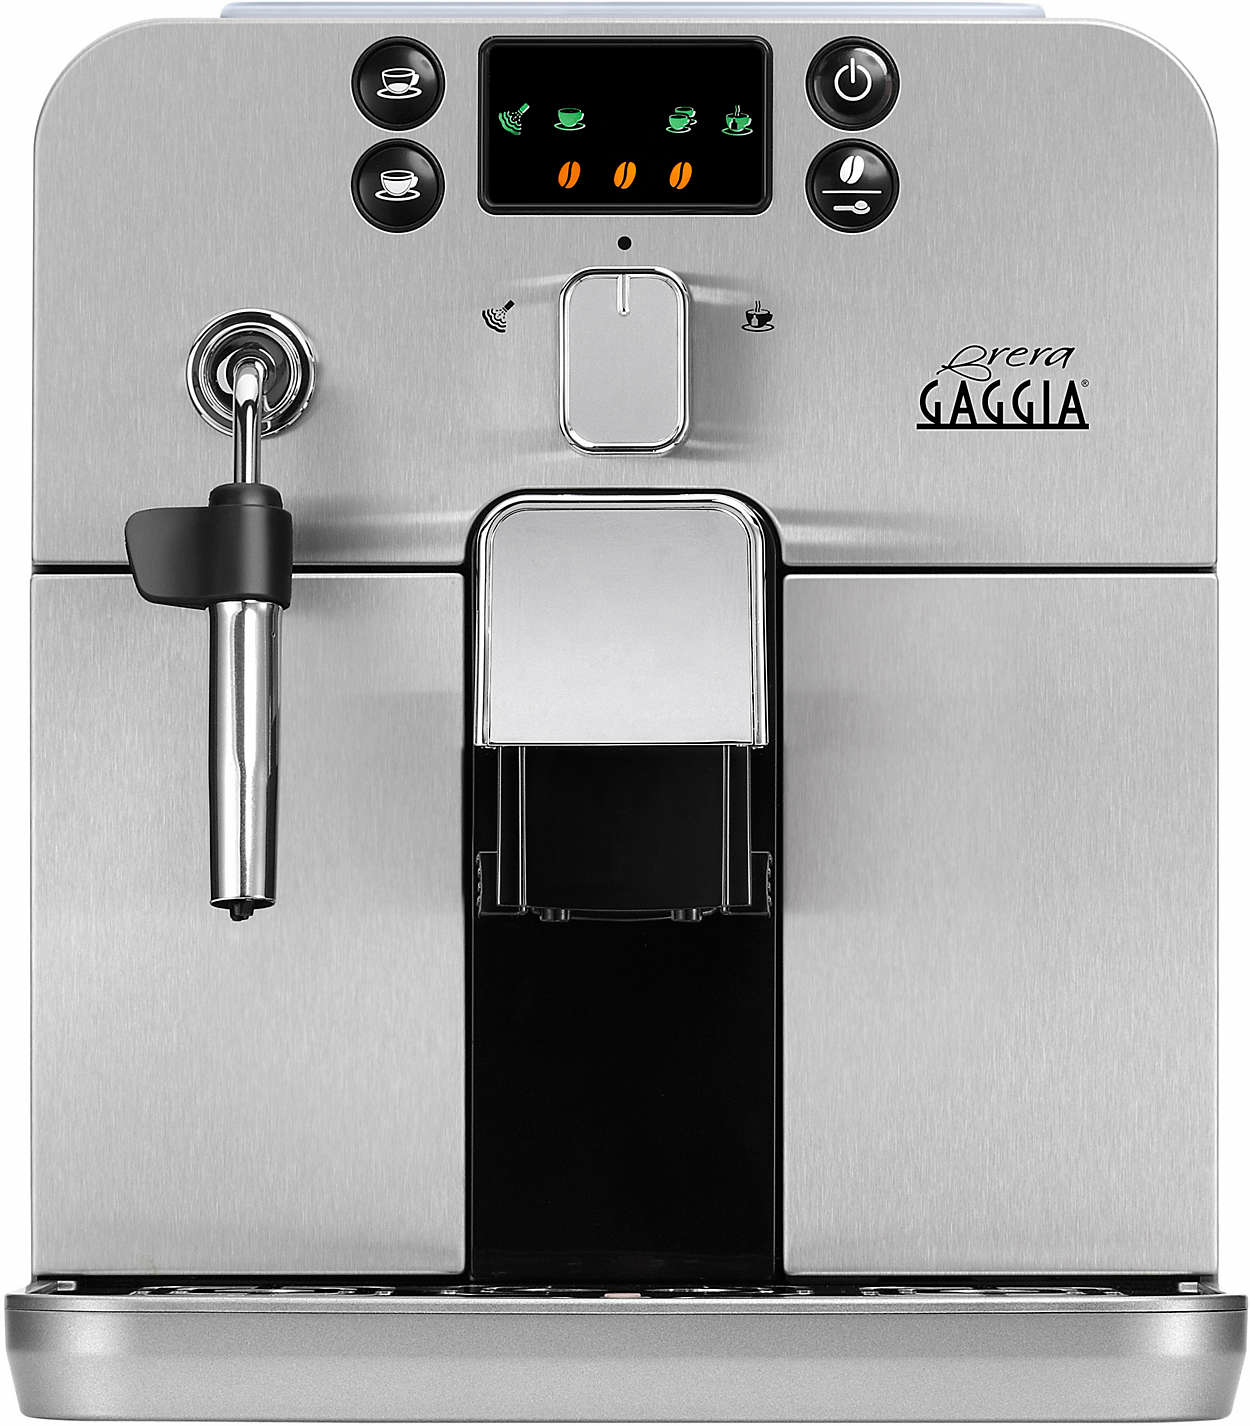 Gaggia RI9305/48 coffee maker